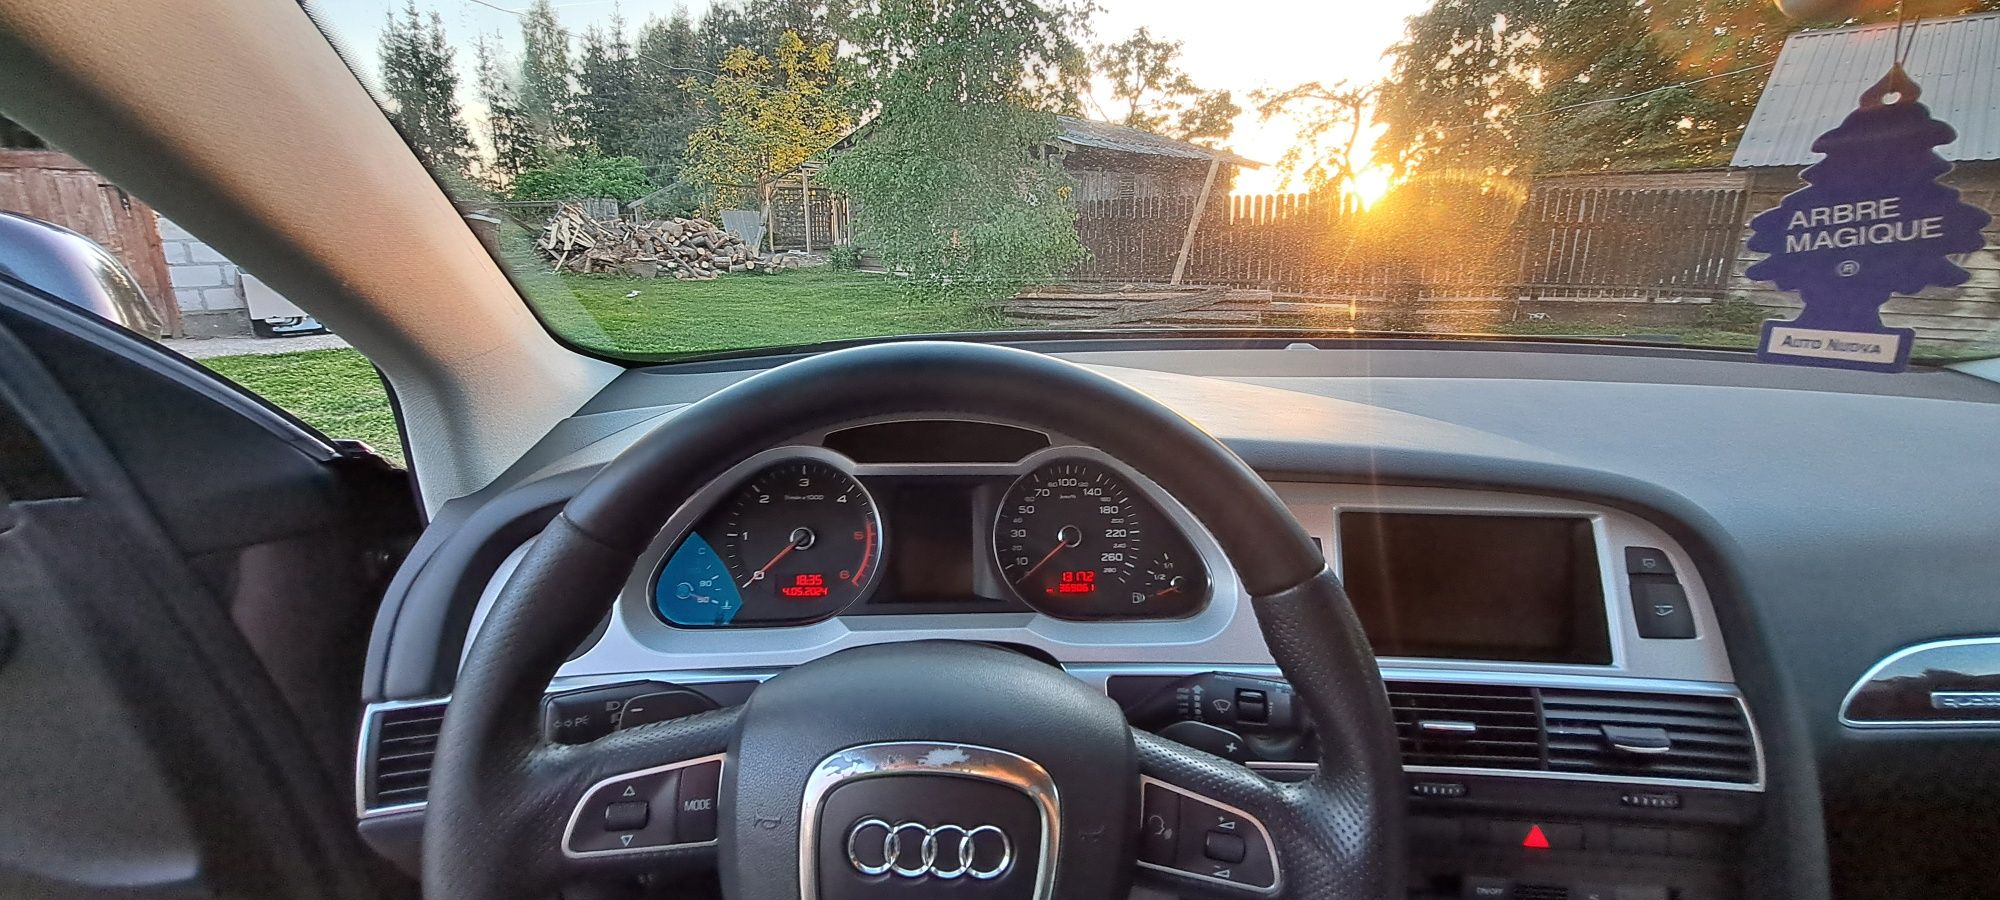 Audi a6c6 allroad